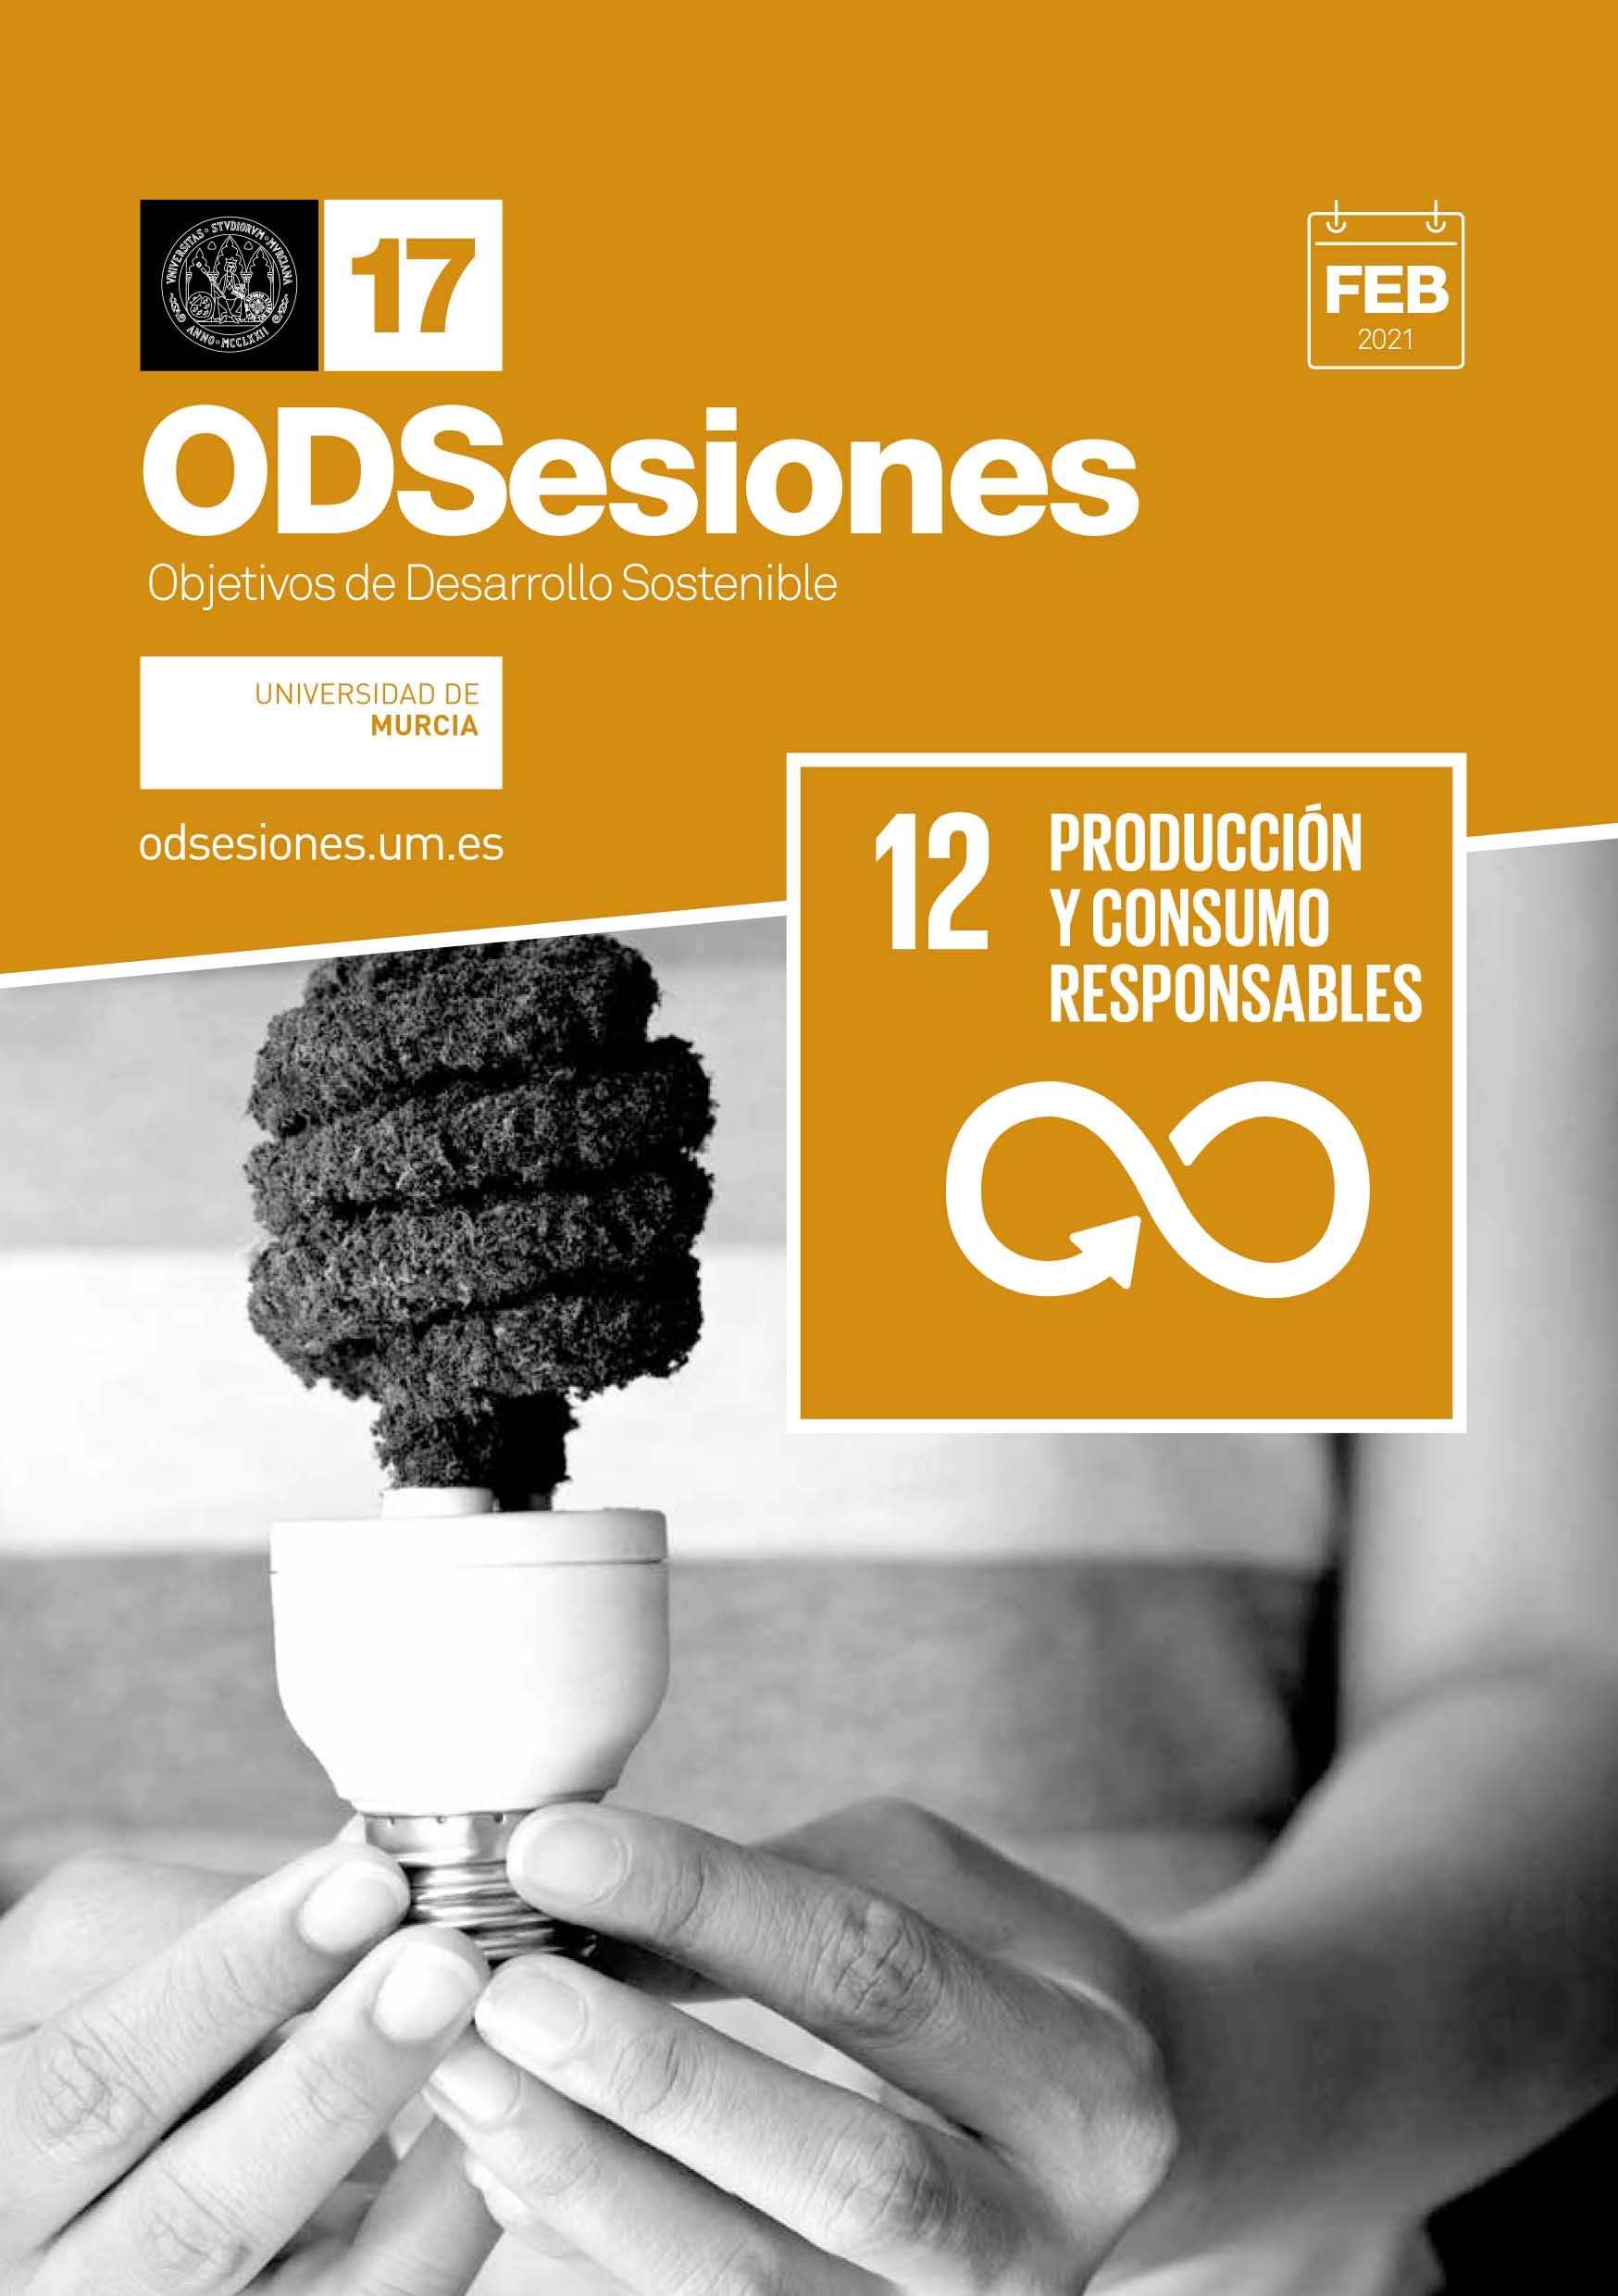 ODS 12 de ODSesiones, proyecto de la Universidad de Murcia